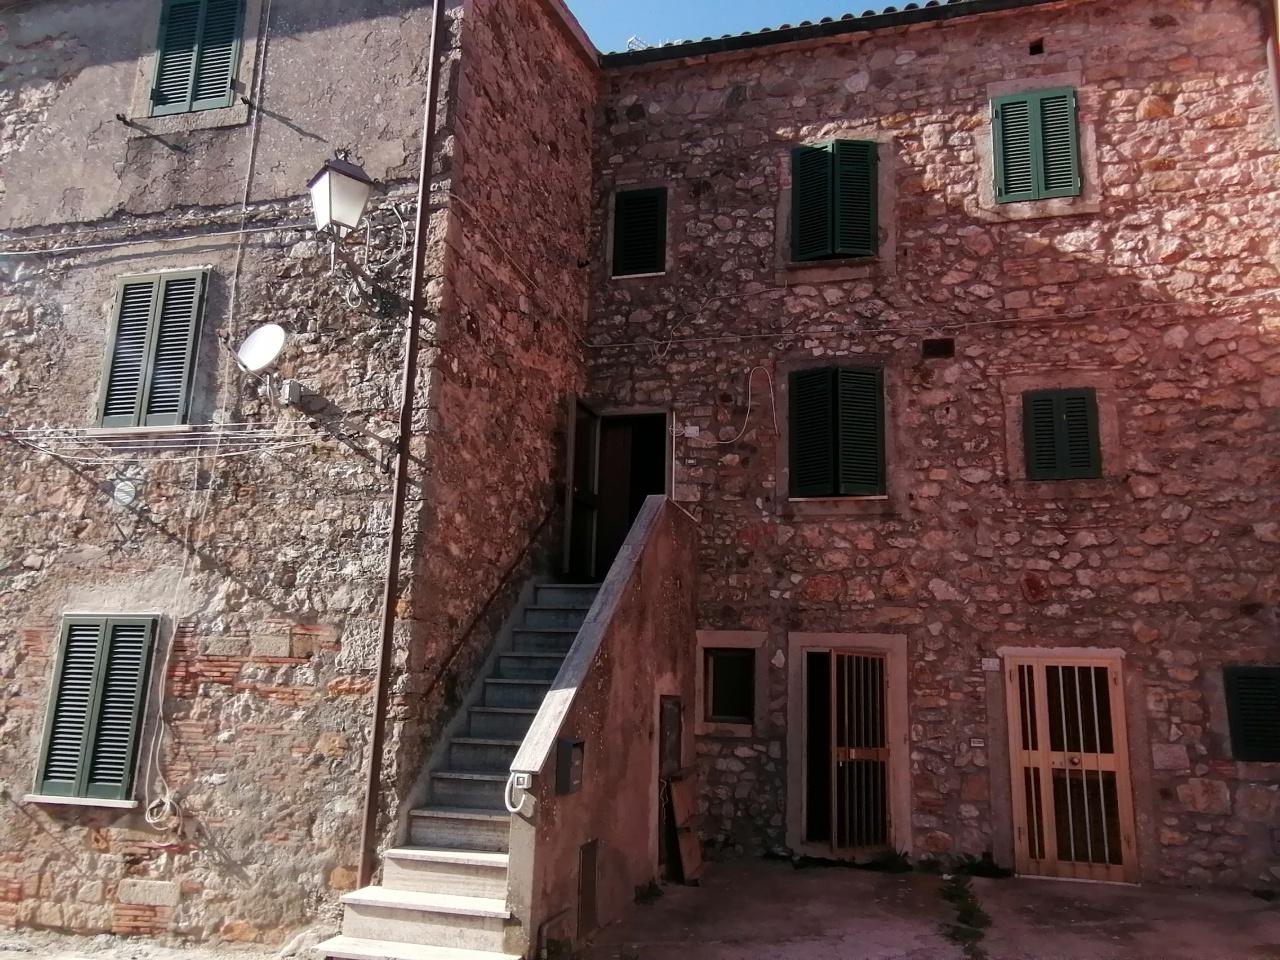 Verkoop Twee kamers, Castell'Azzara foto